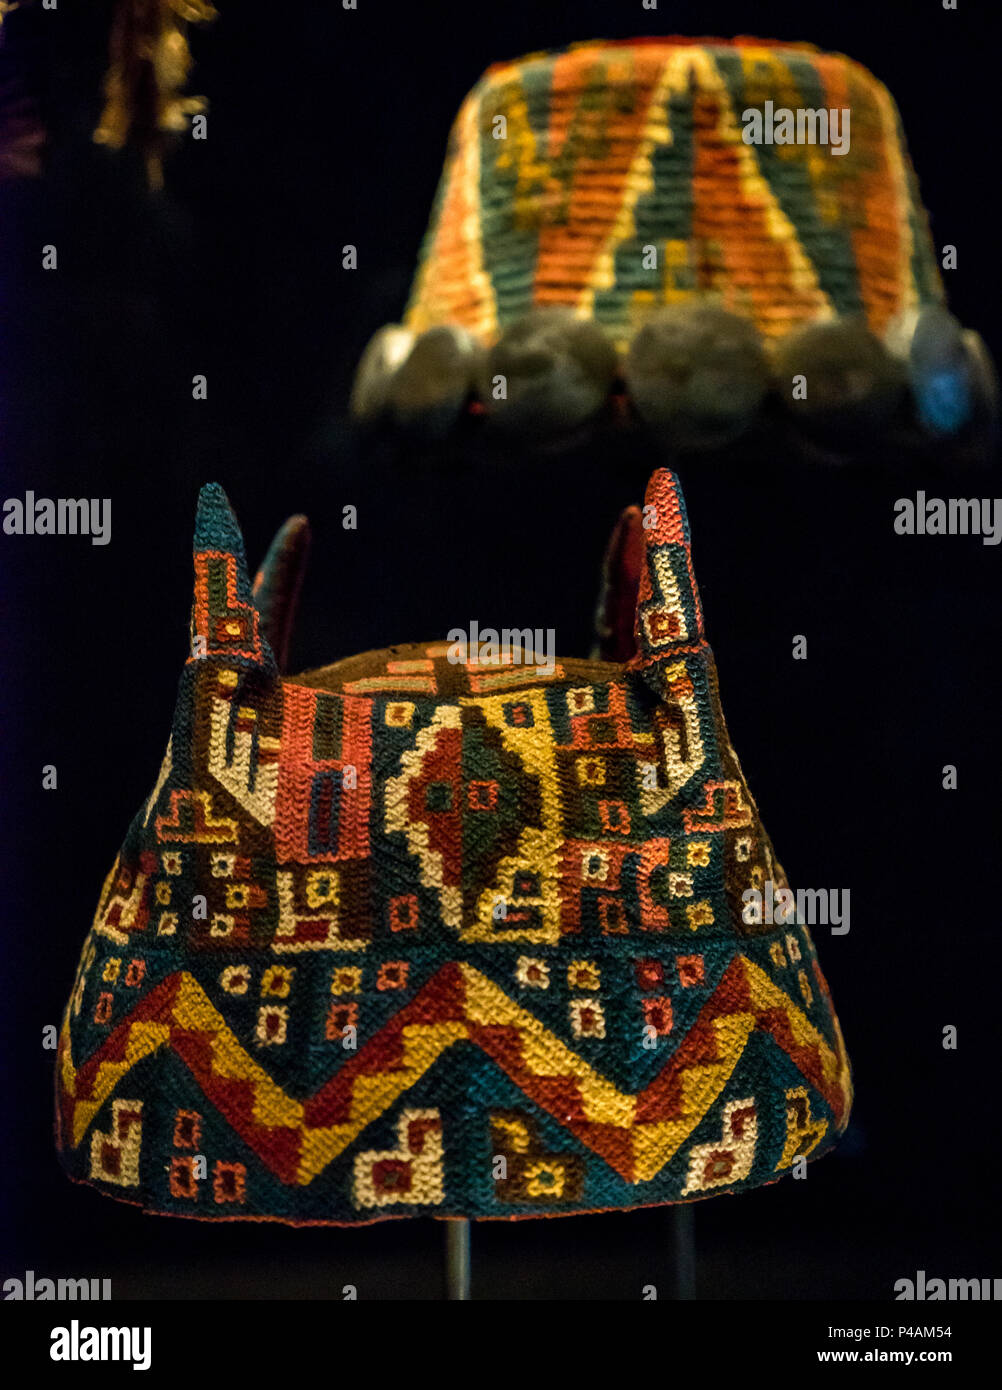 La laine conique tronquée colorés chapeaux portés par les tribus de l'Altiplano, musée, Musée d'art précolombien du Chili, Santiago, Chili, Amérique du Sud Banque D'Images